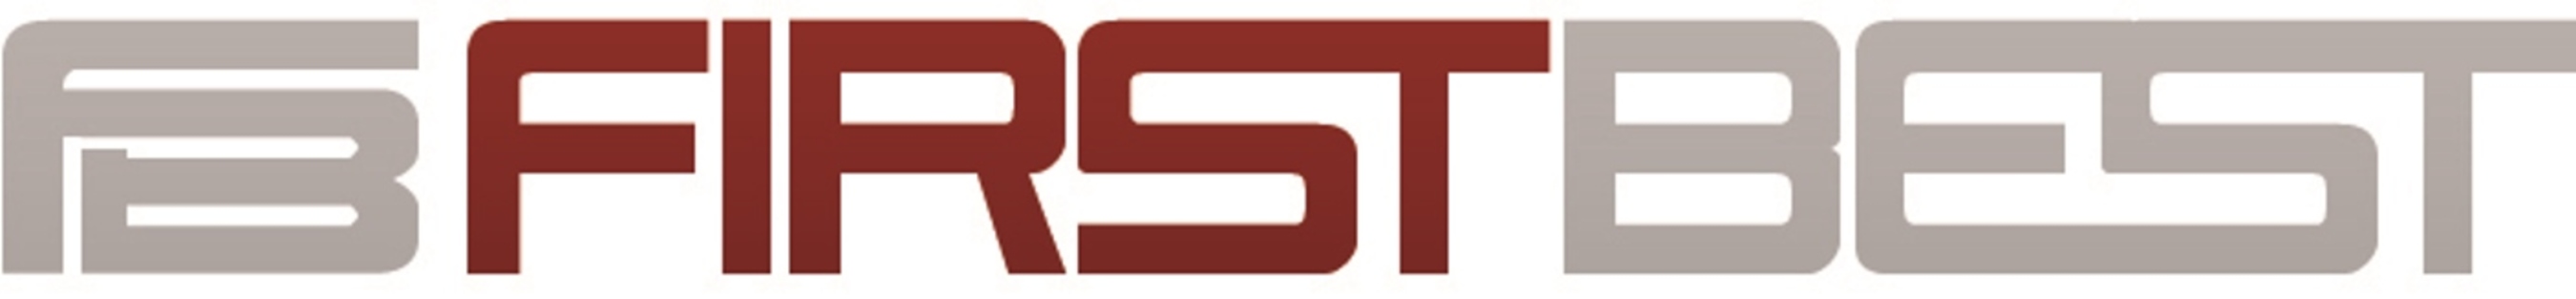 FirstBest(R) Systems, Inc. logo. (PRNewsFoto/FirstBest Systems, Inc.) (PRNewsFoto/)